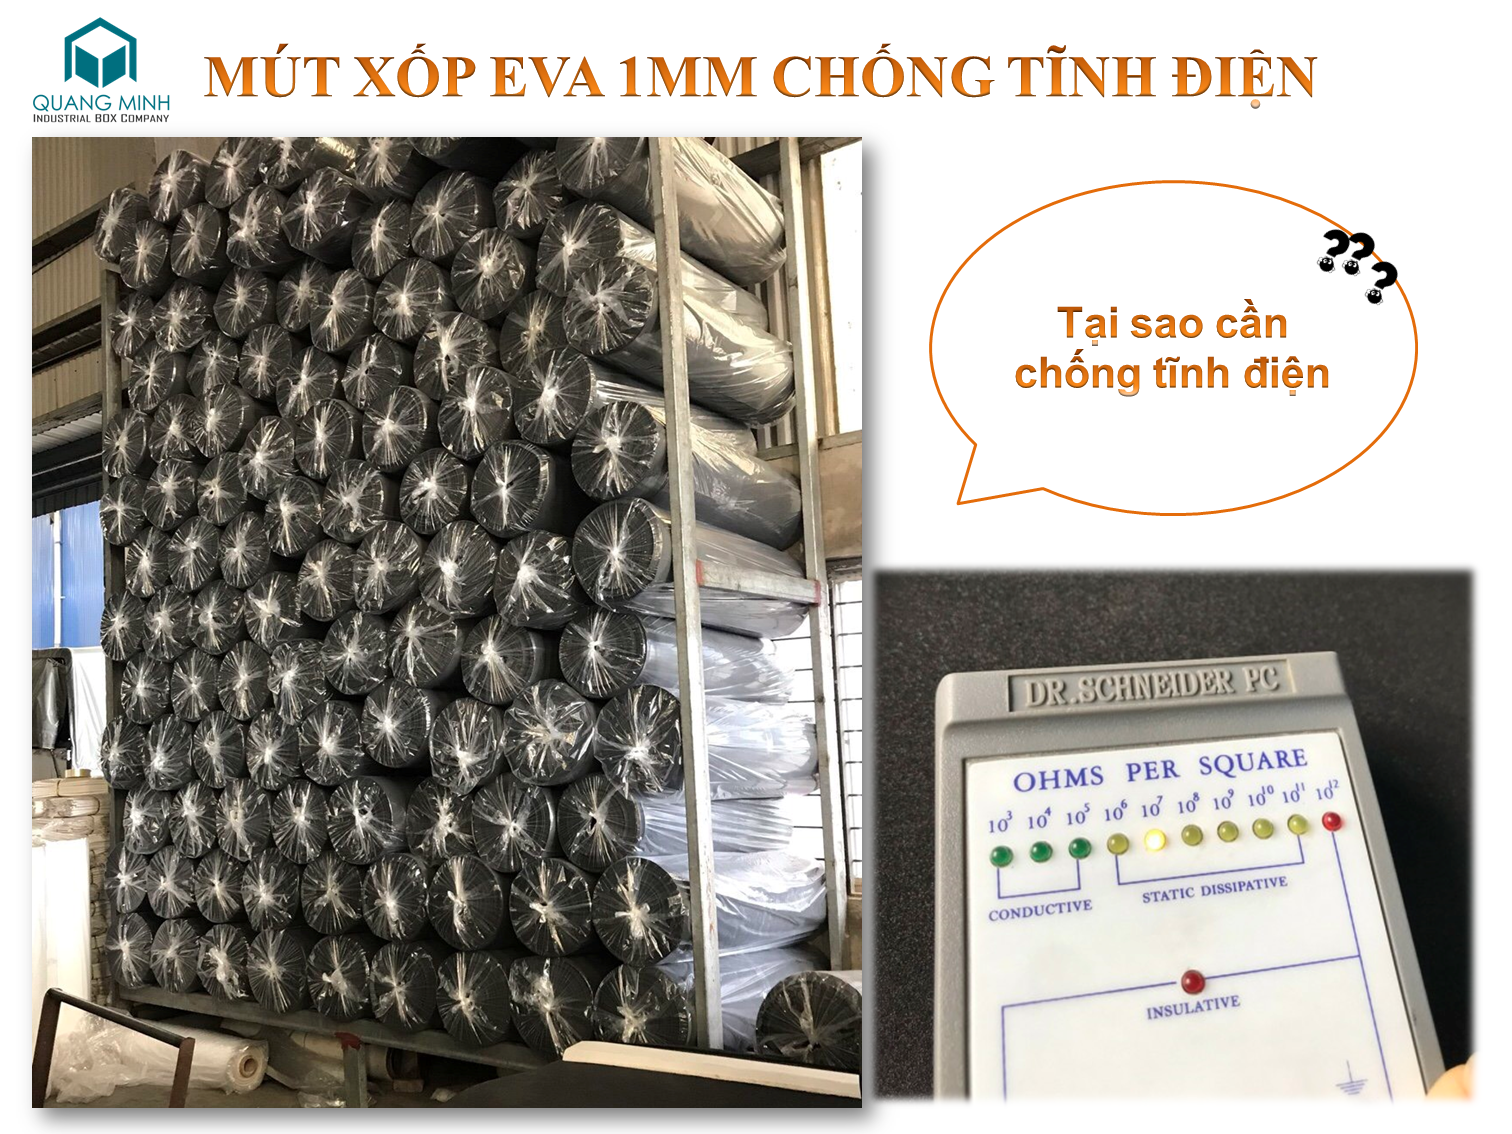 mut-xop-eva-chong-tinh-dien-1mm